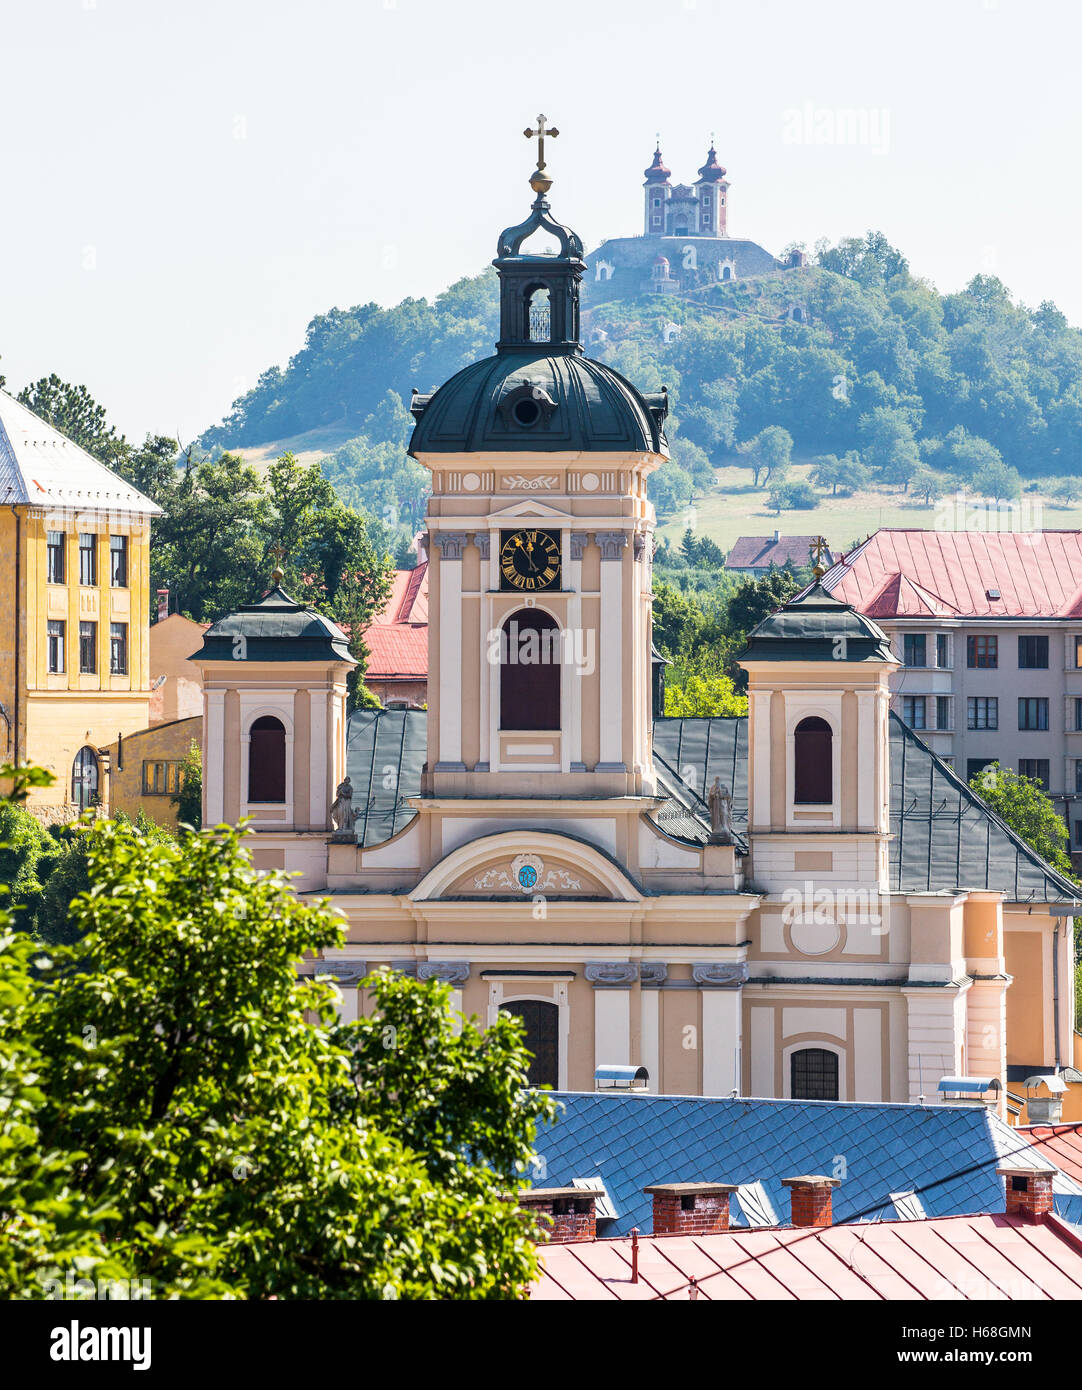 Banska Stiavnica, Slovakia - august 06, 2015: Parish Church of the Assumption in Banska Stiavnica, Slovakia Stock Photo